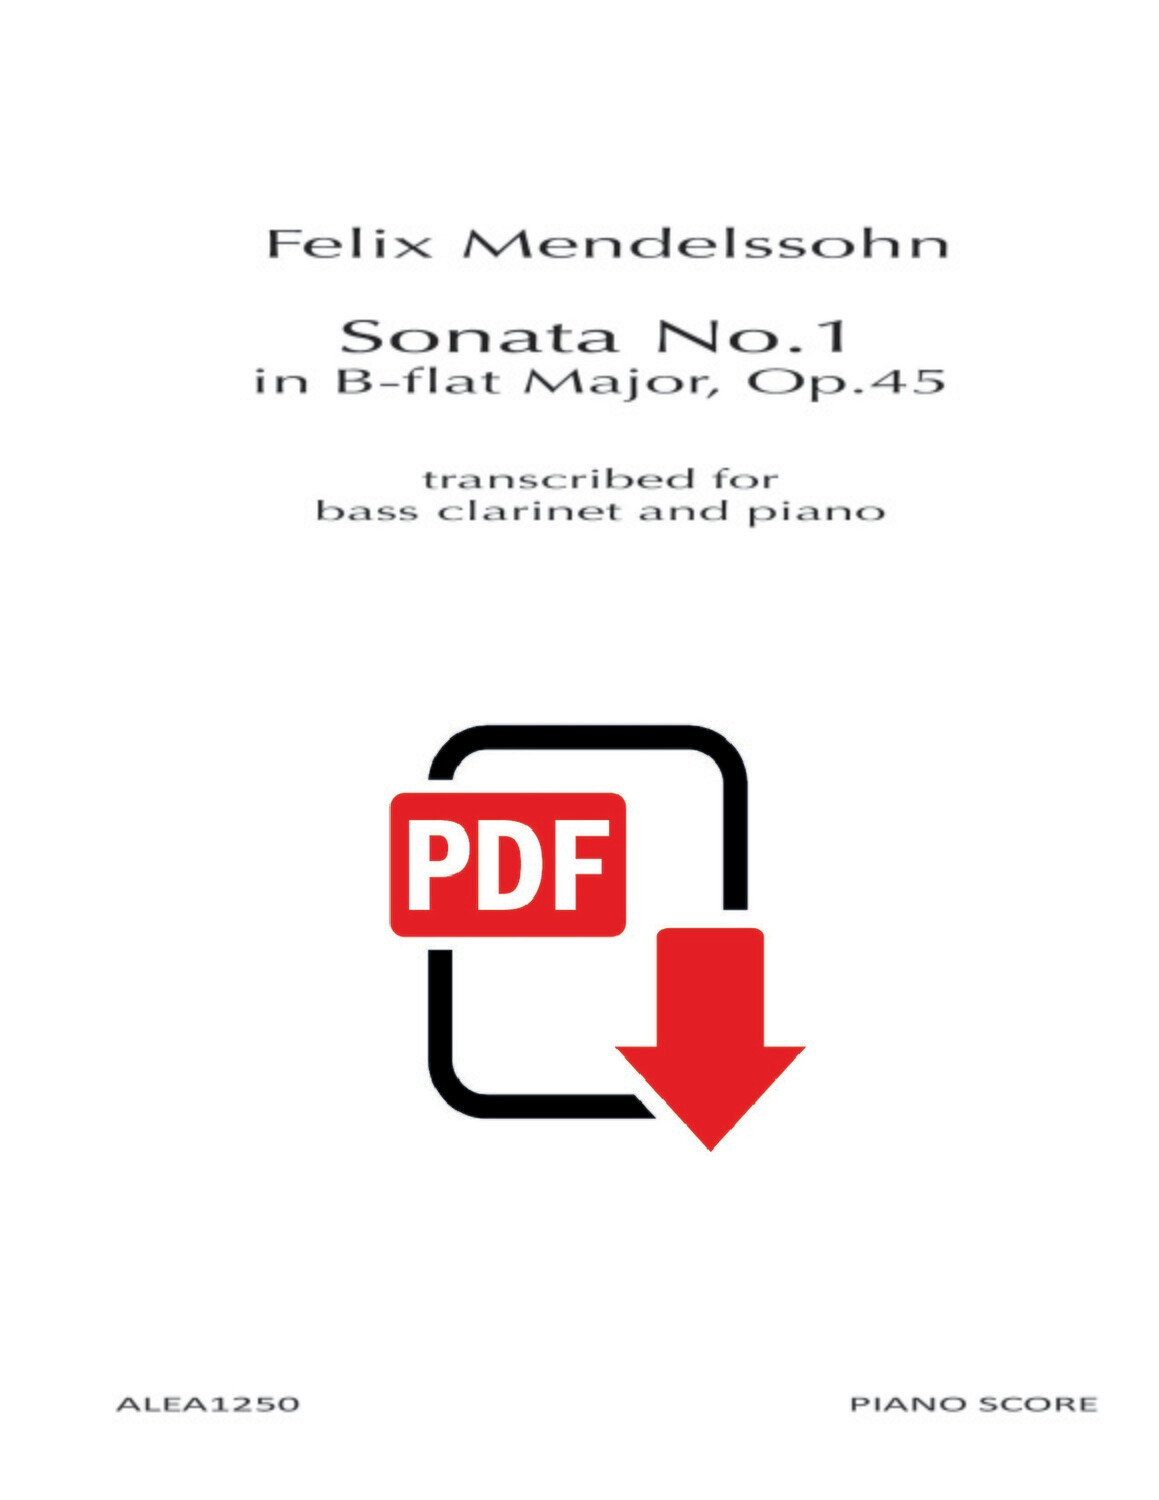 Mendelssohn: Sonata No. 1 in B-flat Major, Op.45 (PDF)